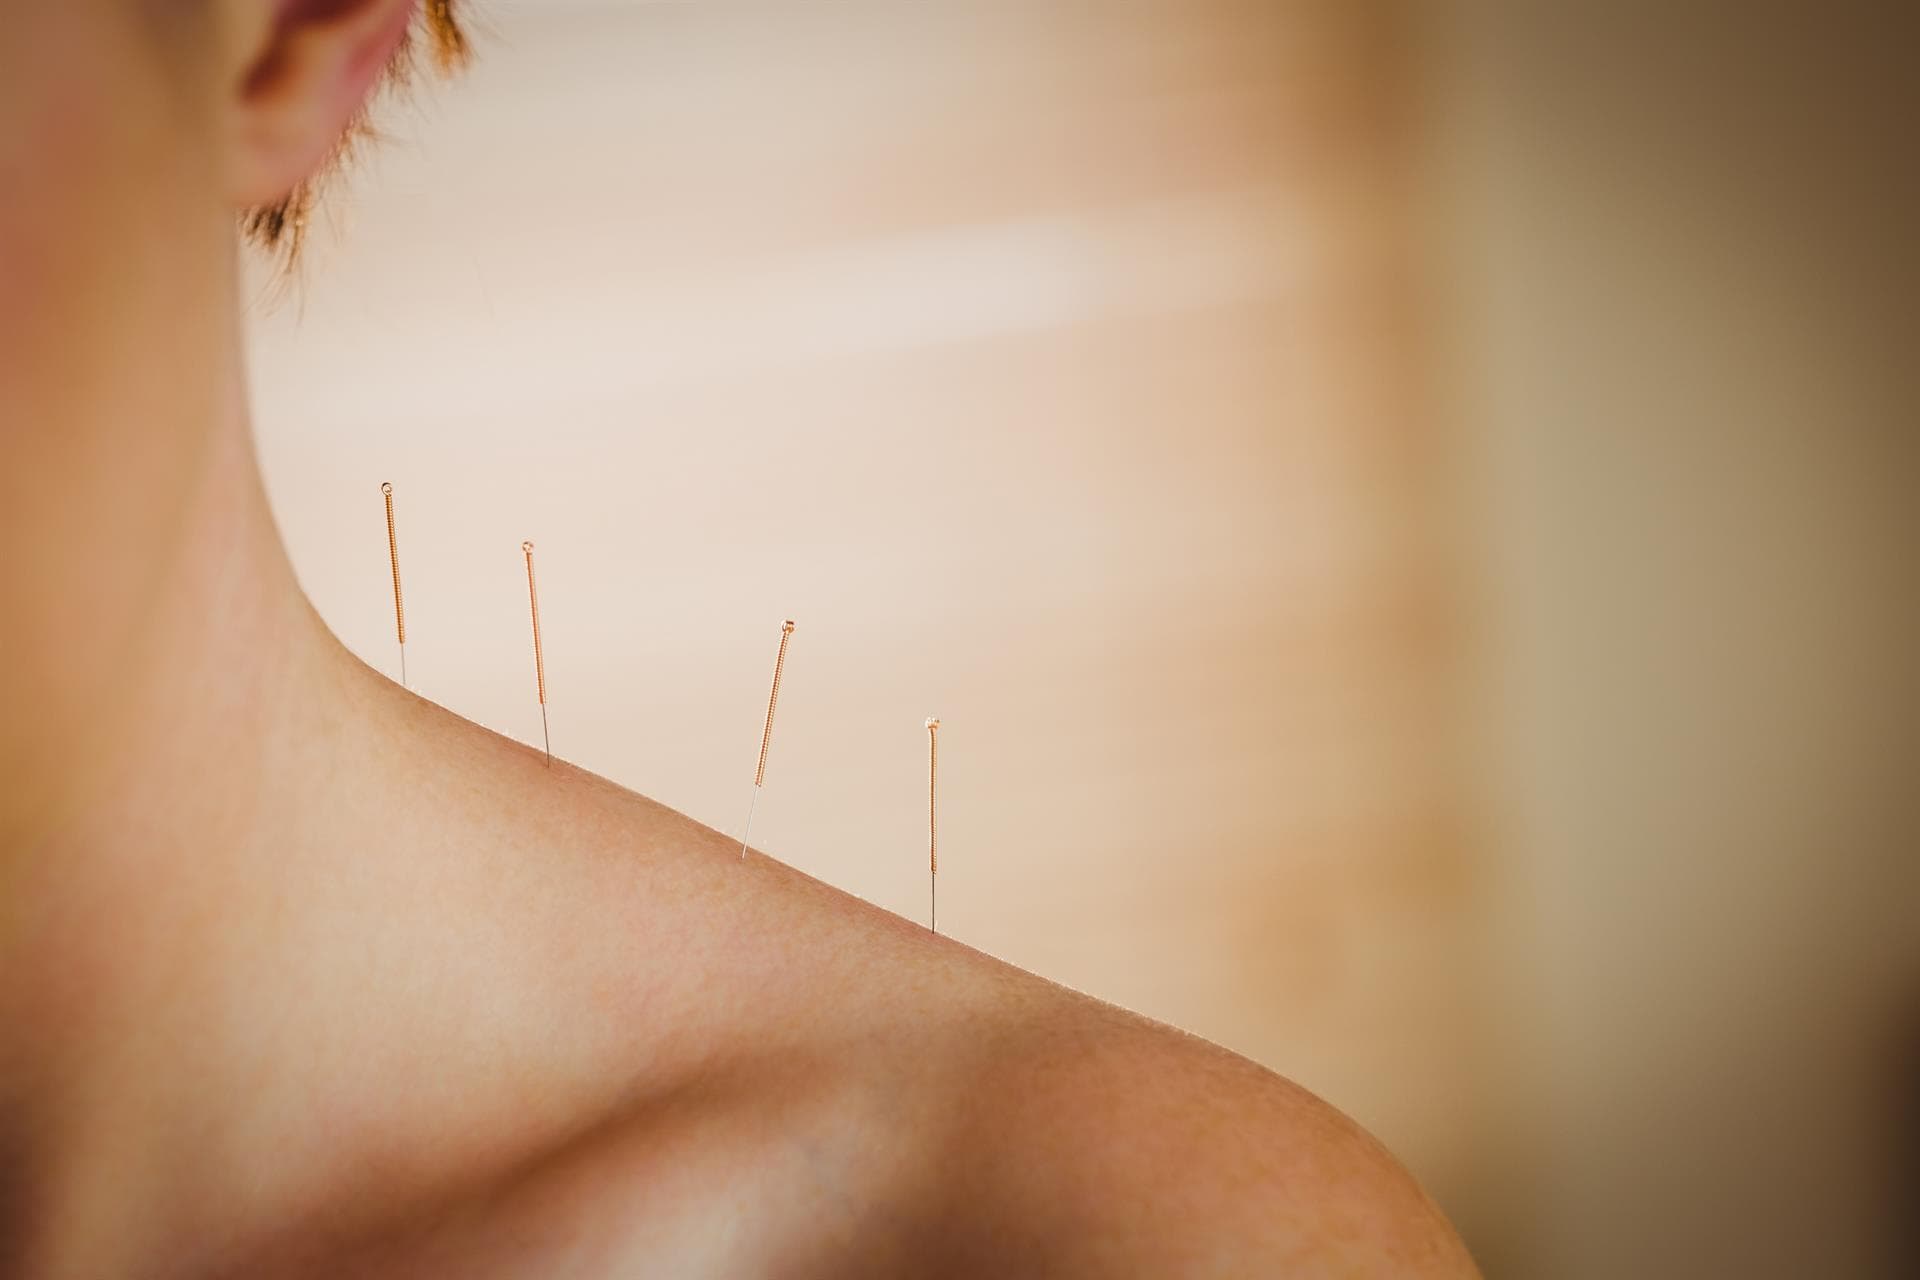 Tratamientos de acupuntura y digitopuntura